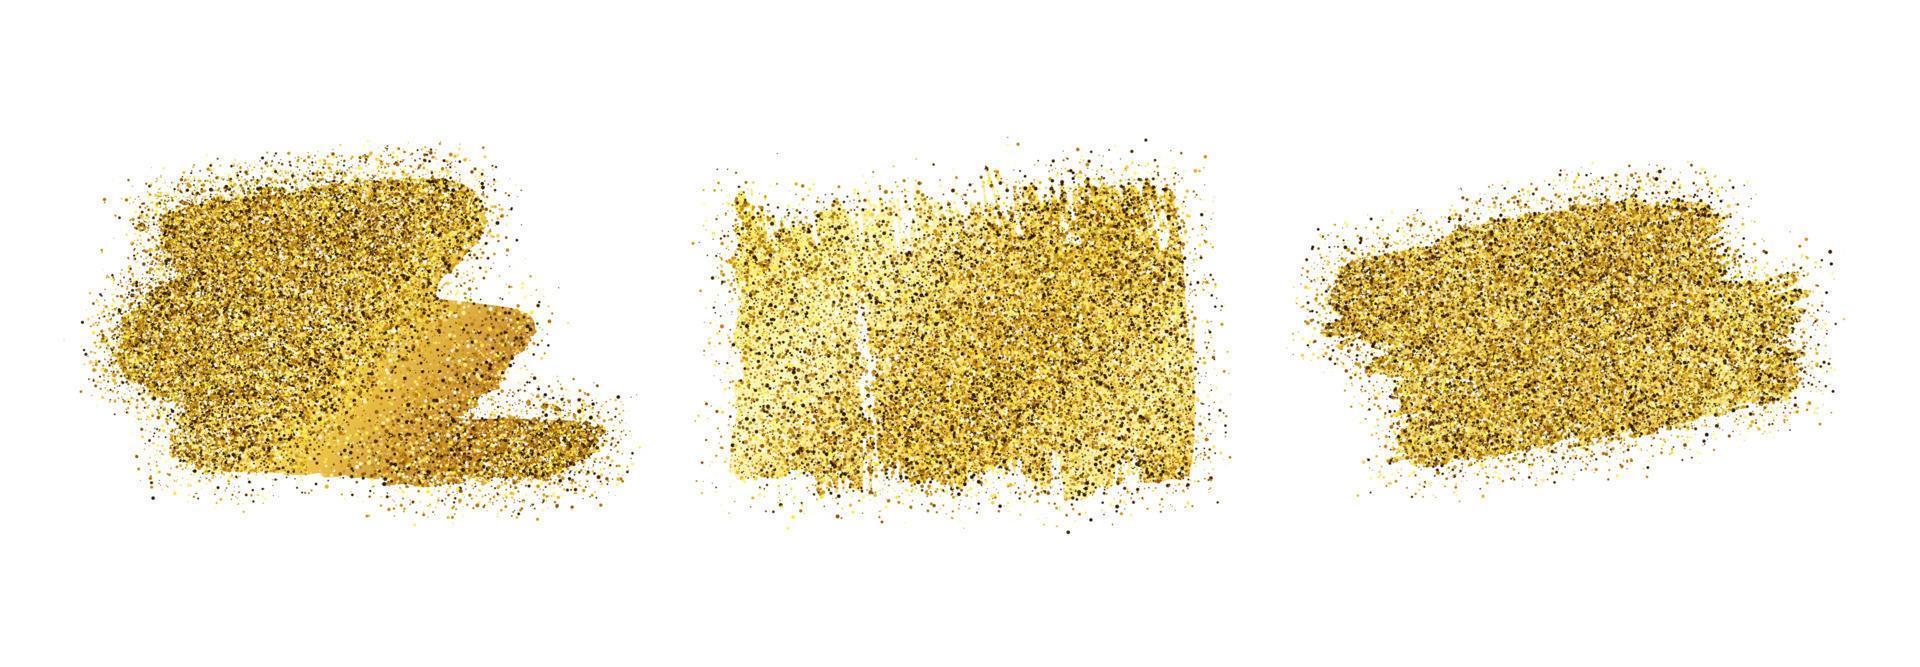 uppsättning av tre gyllene glittrande utstryker på en vit bakgrund. bakgrund med guld pärlar och glitter effekt. tömma Plats för din text. vektor illustration